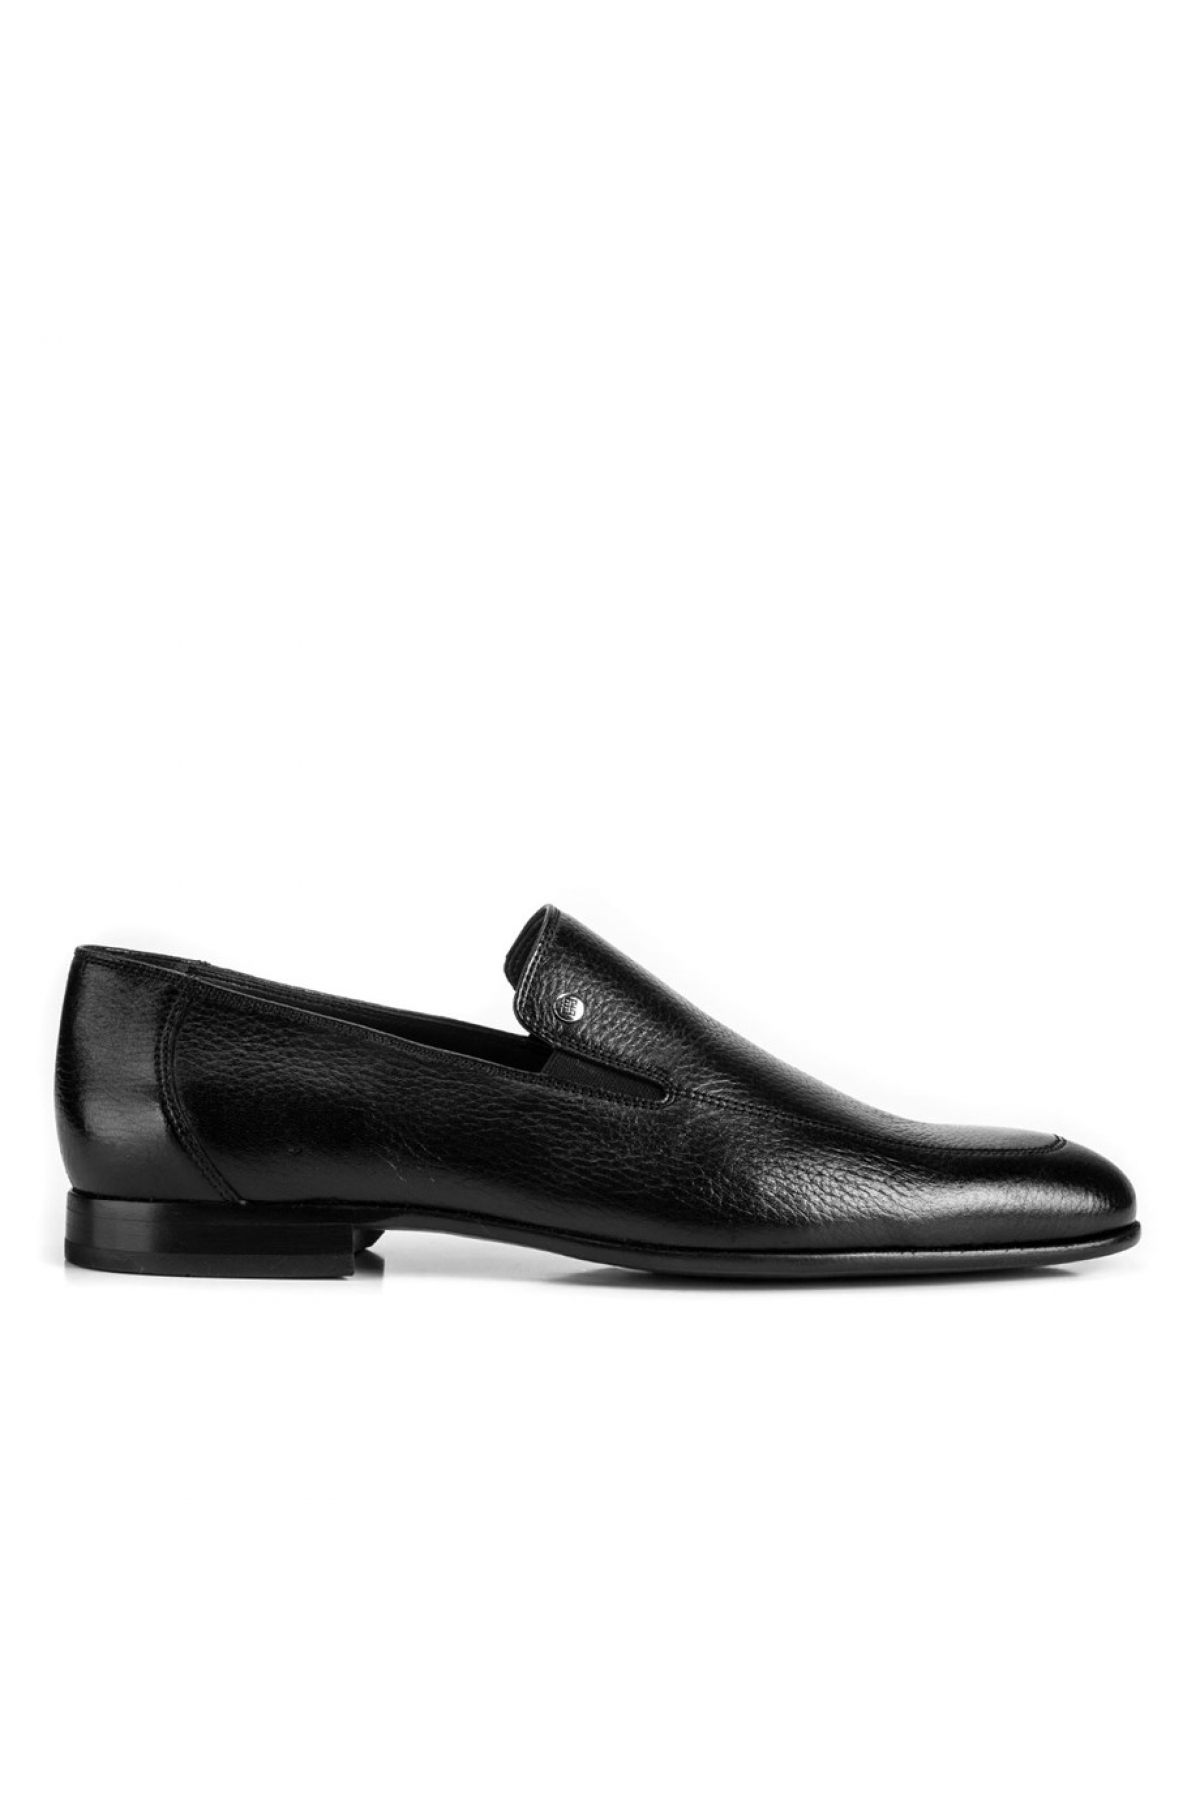 Flo Hakiki Deri Siyah Erkek Klasik Ayakkabı. 2